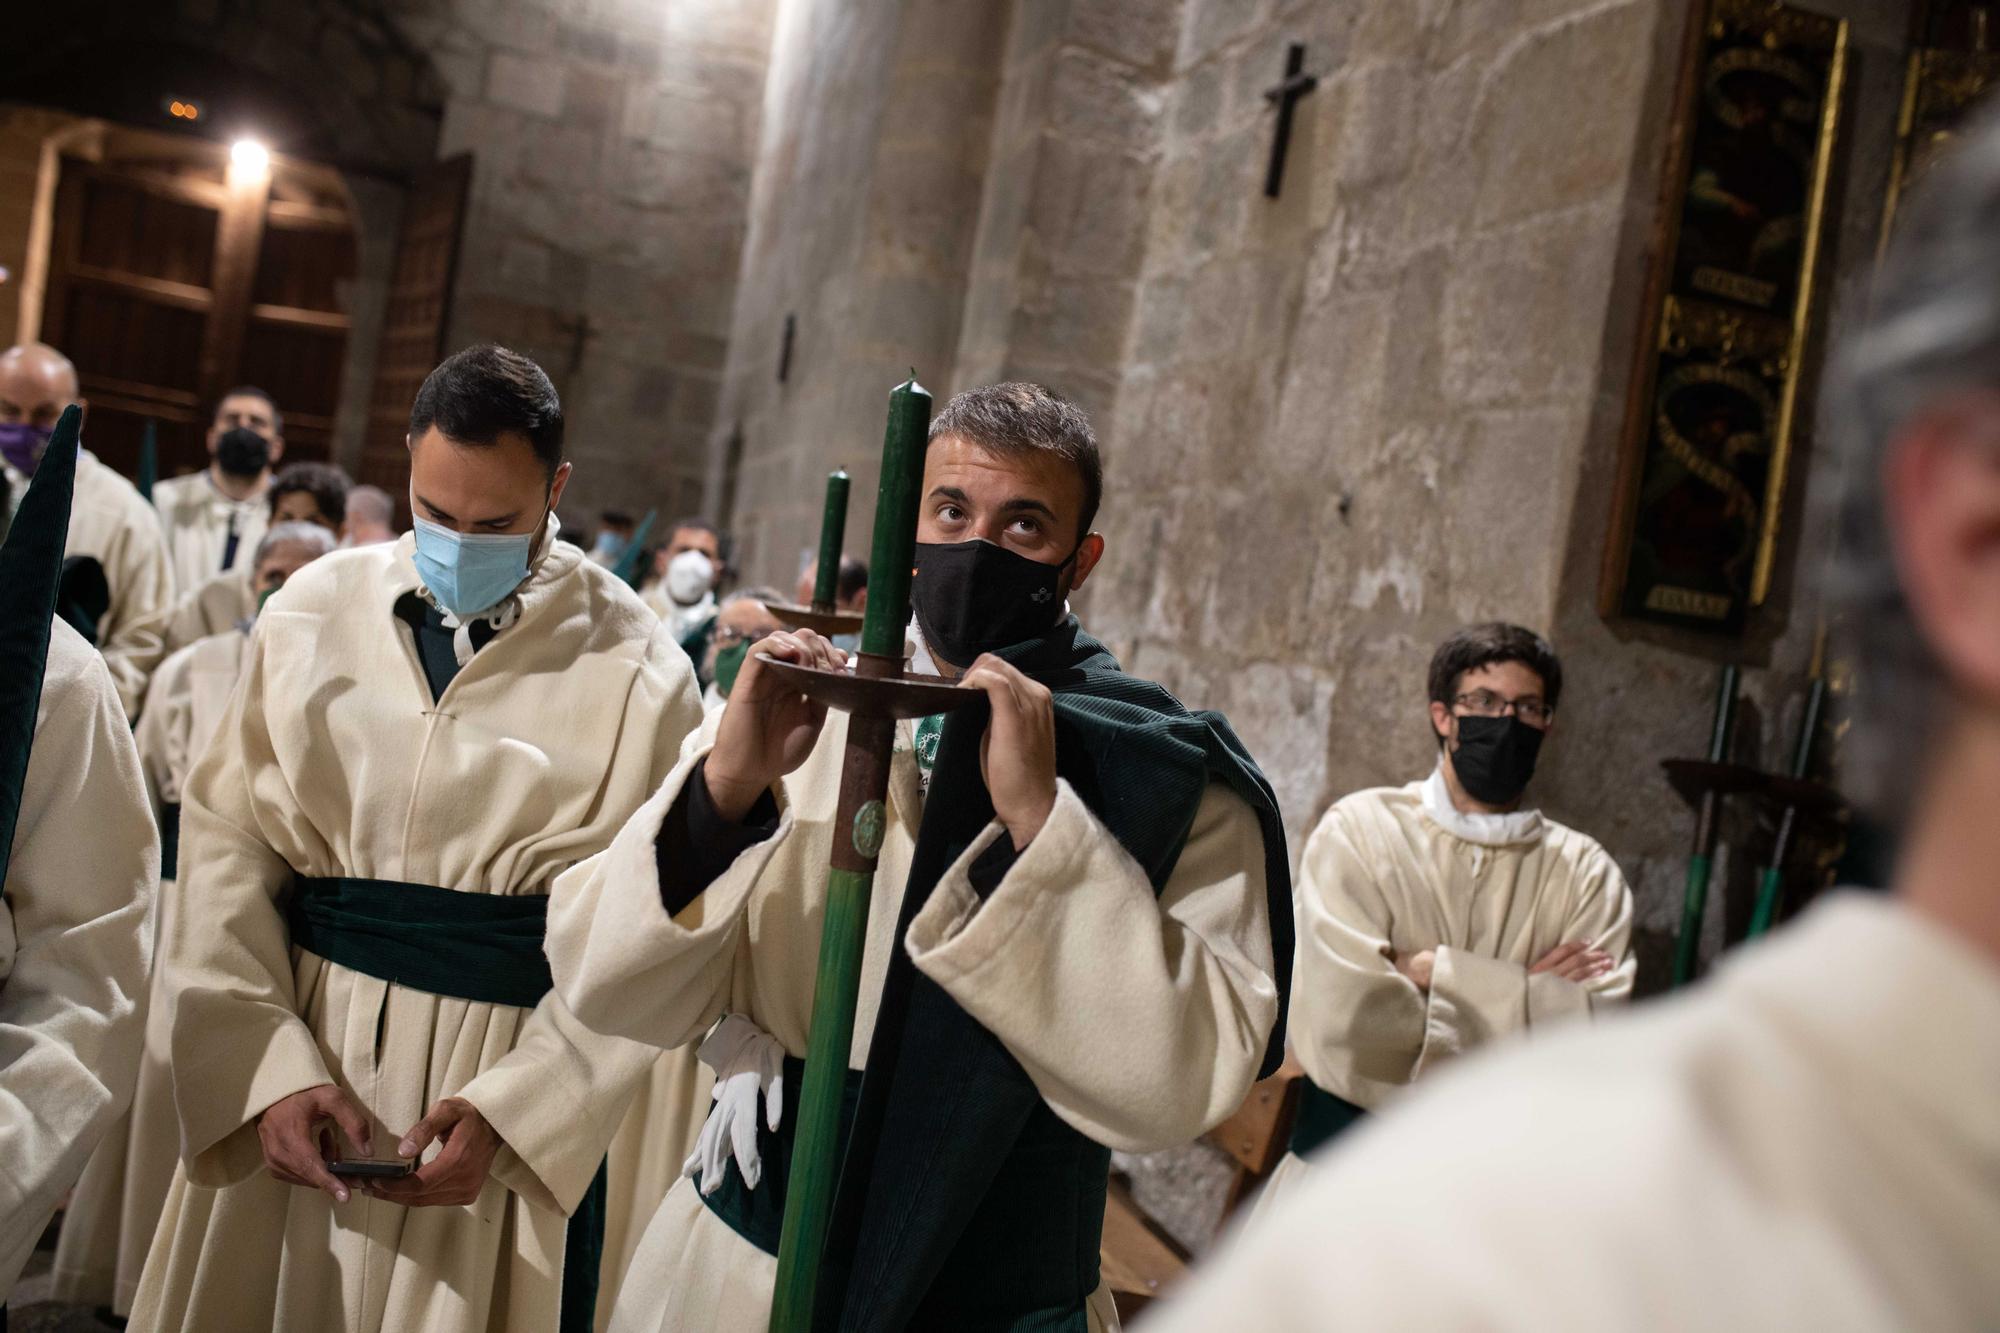 GALERÍA | La procesión de la Hermandad Penitencial de las Siete Palabras, en imágenes